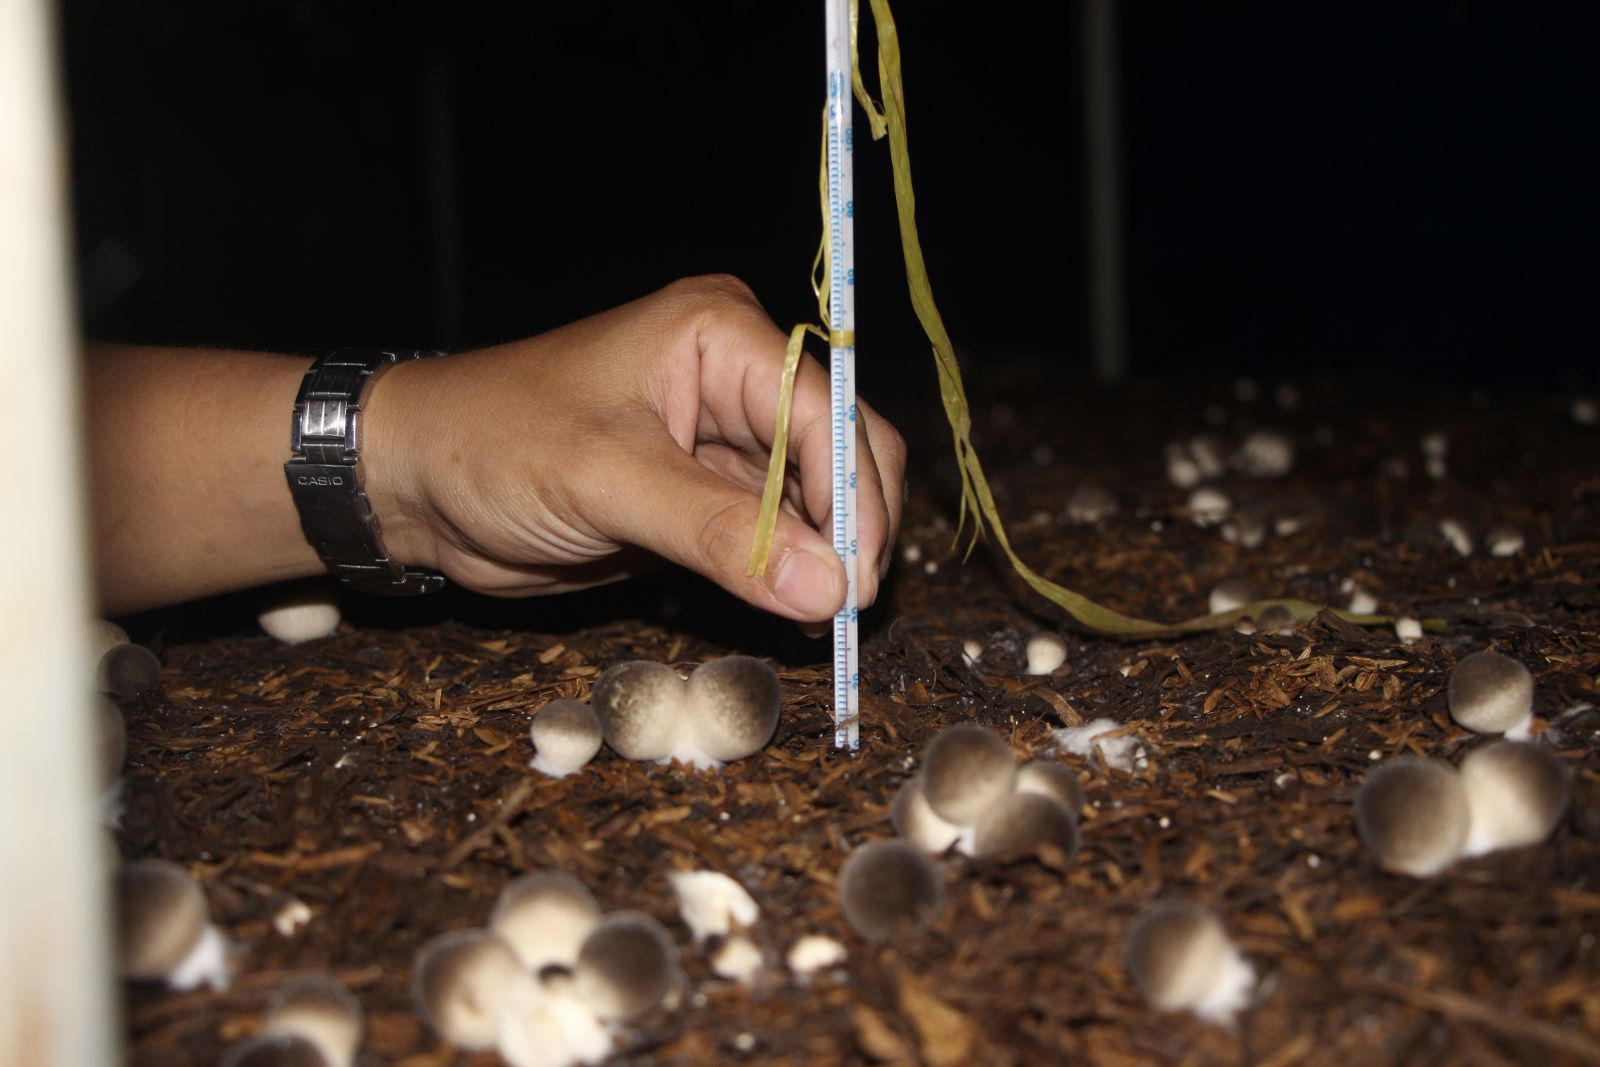 Để sản xuất thành công một vụ nấm sạch, nông dân cần tuân thủ nghiêm ngặt quy trình trồng nấm từ: Quy cách xây dựng nhà trồng nấm đến việc xử lý sâu, bệnh, ghi chép nhật ký,… (Trong ảnh: Nhiệt kế dùng để đo nhiệt độ mô rơm trên giàn)